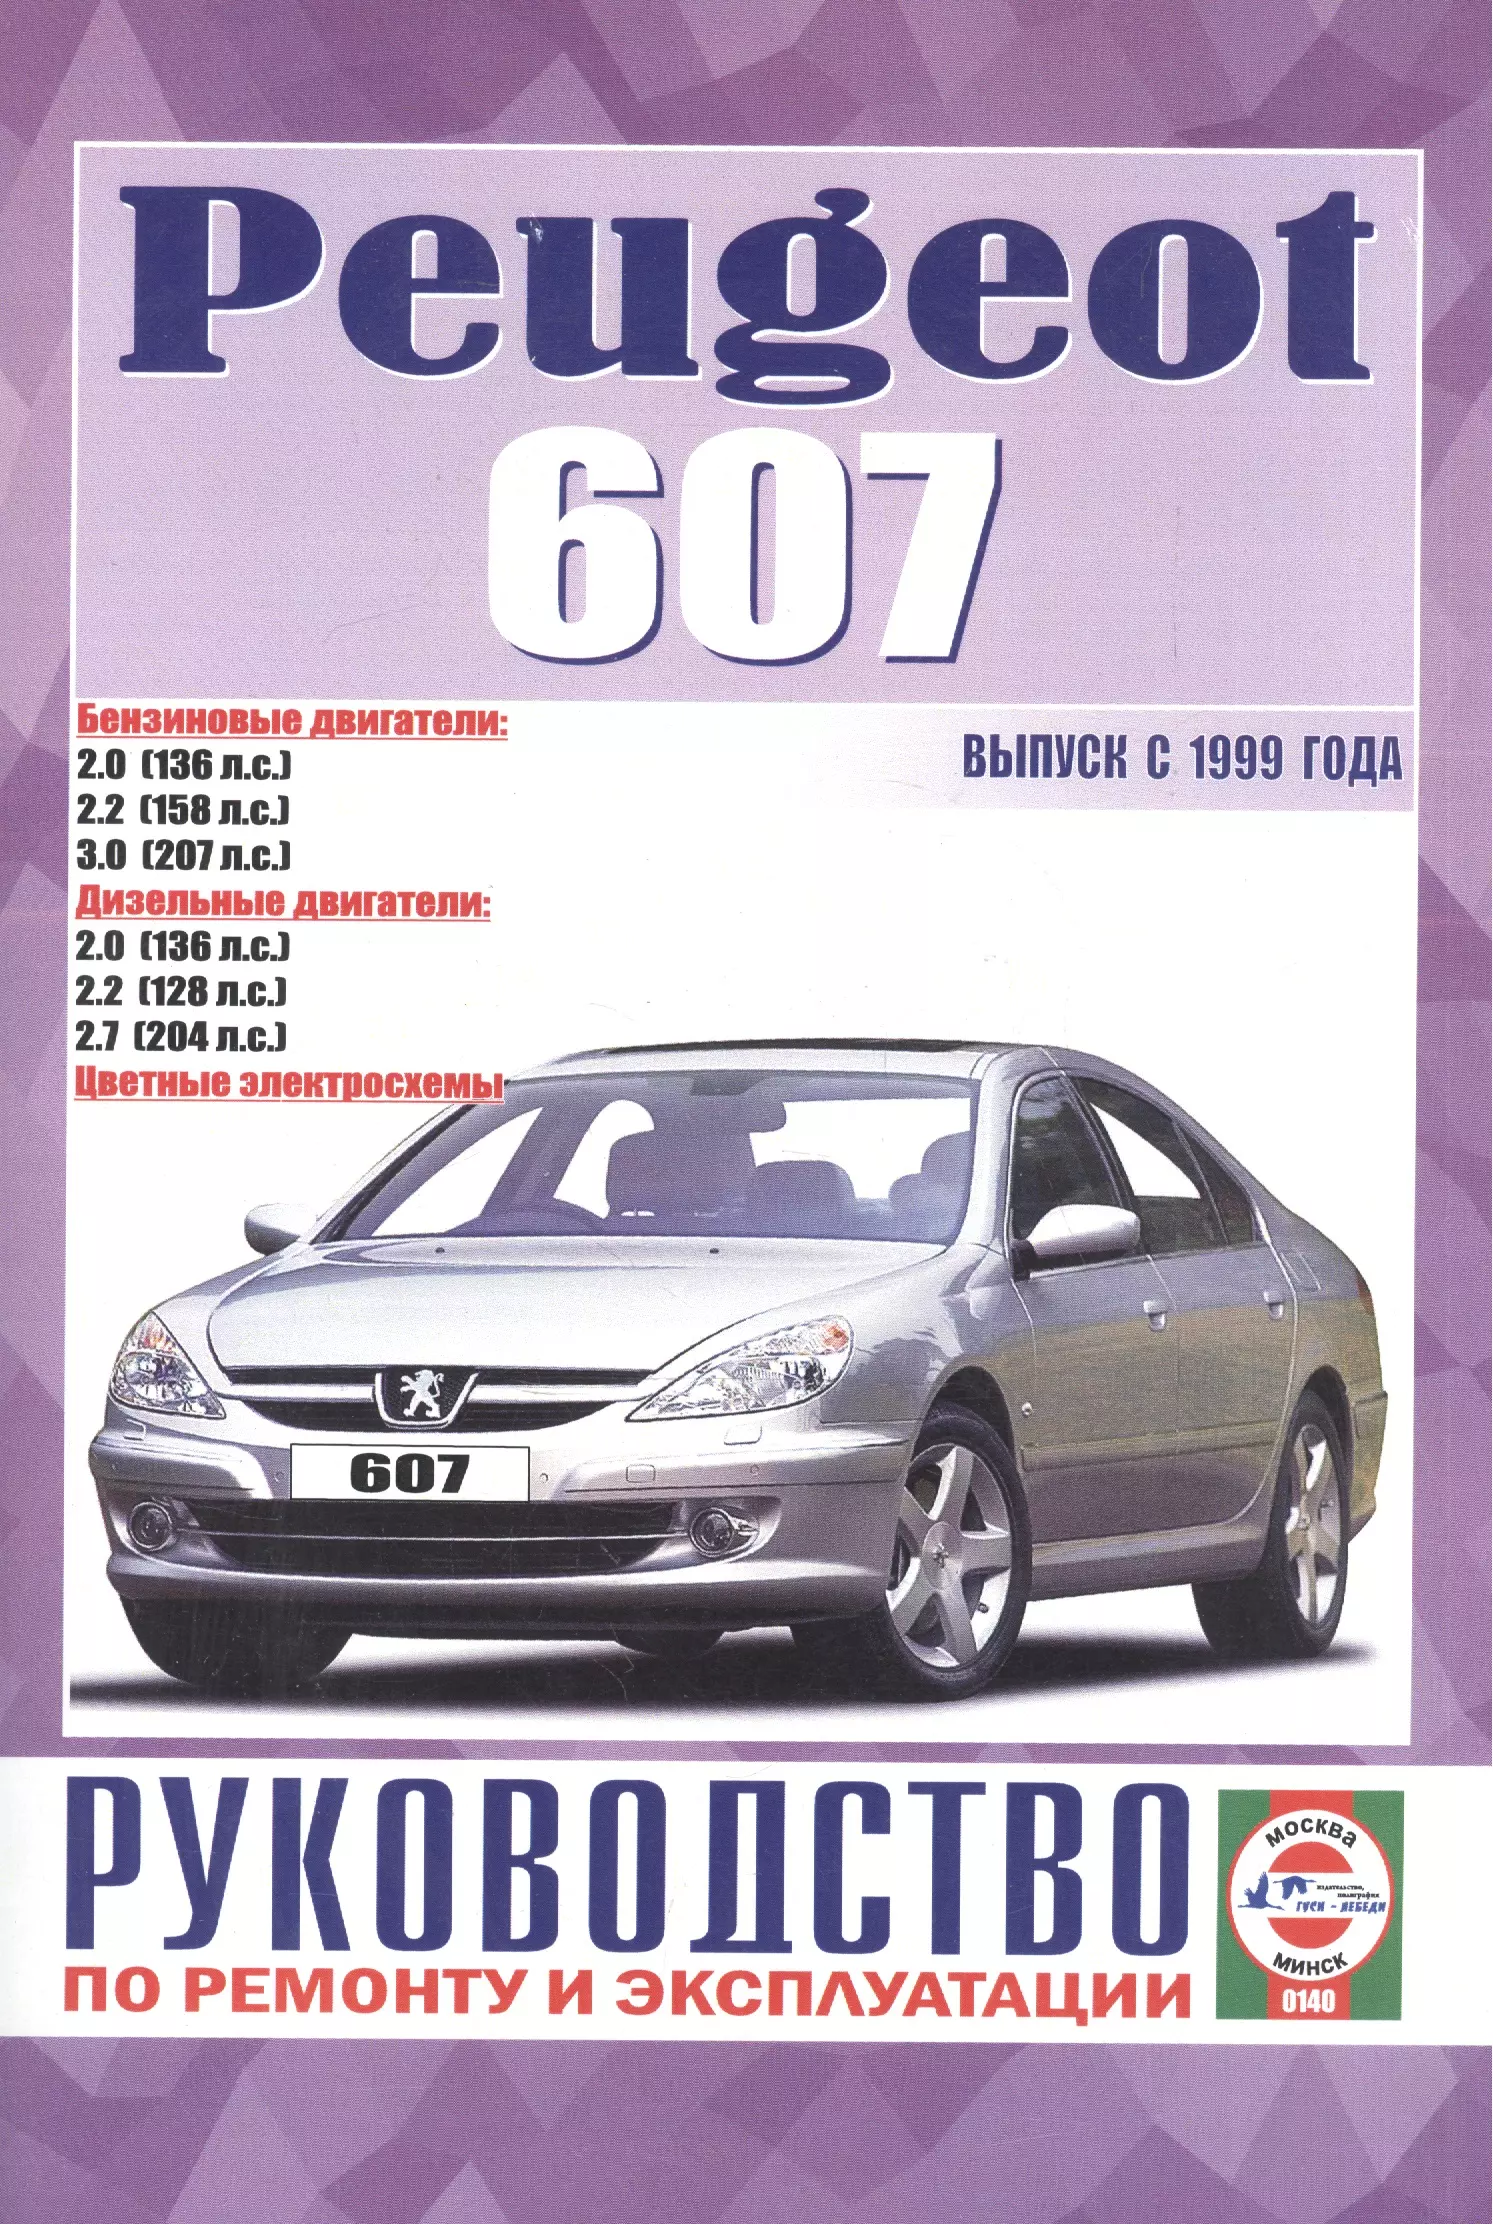 Гусь Сергей Васильевич - Руководство по ремонту и эксплуатации Peugeot 607 бензин/дизель выпуск с 1999 года